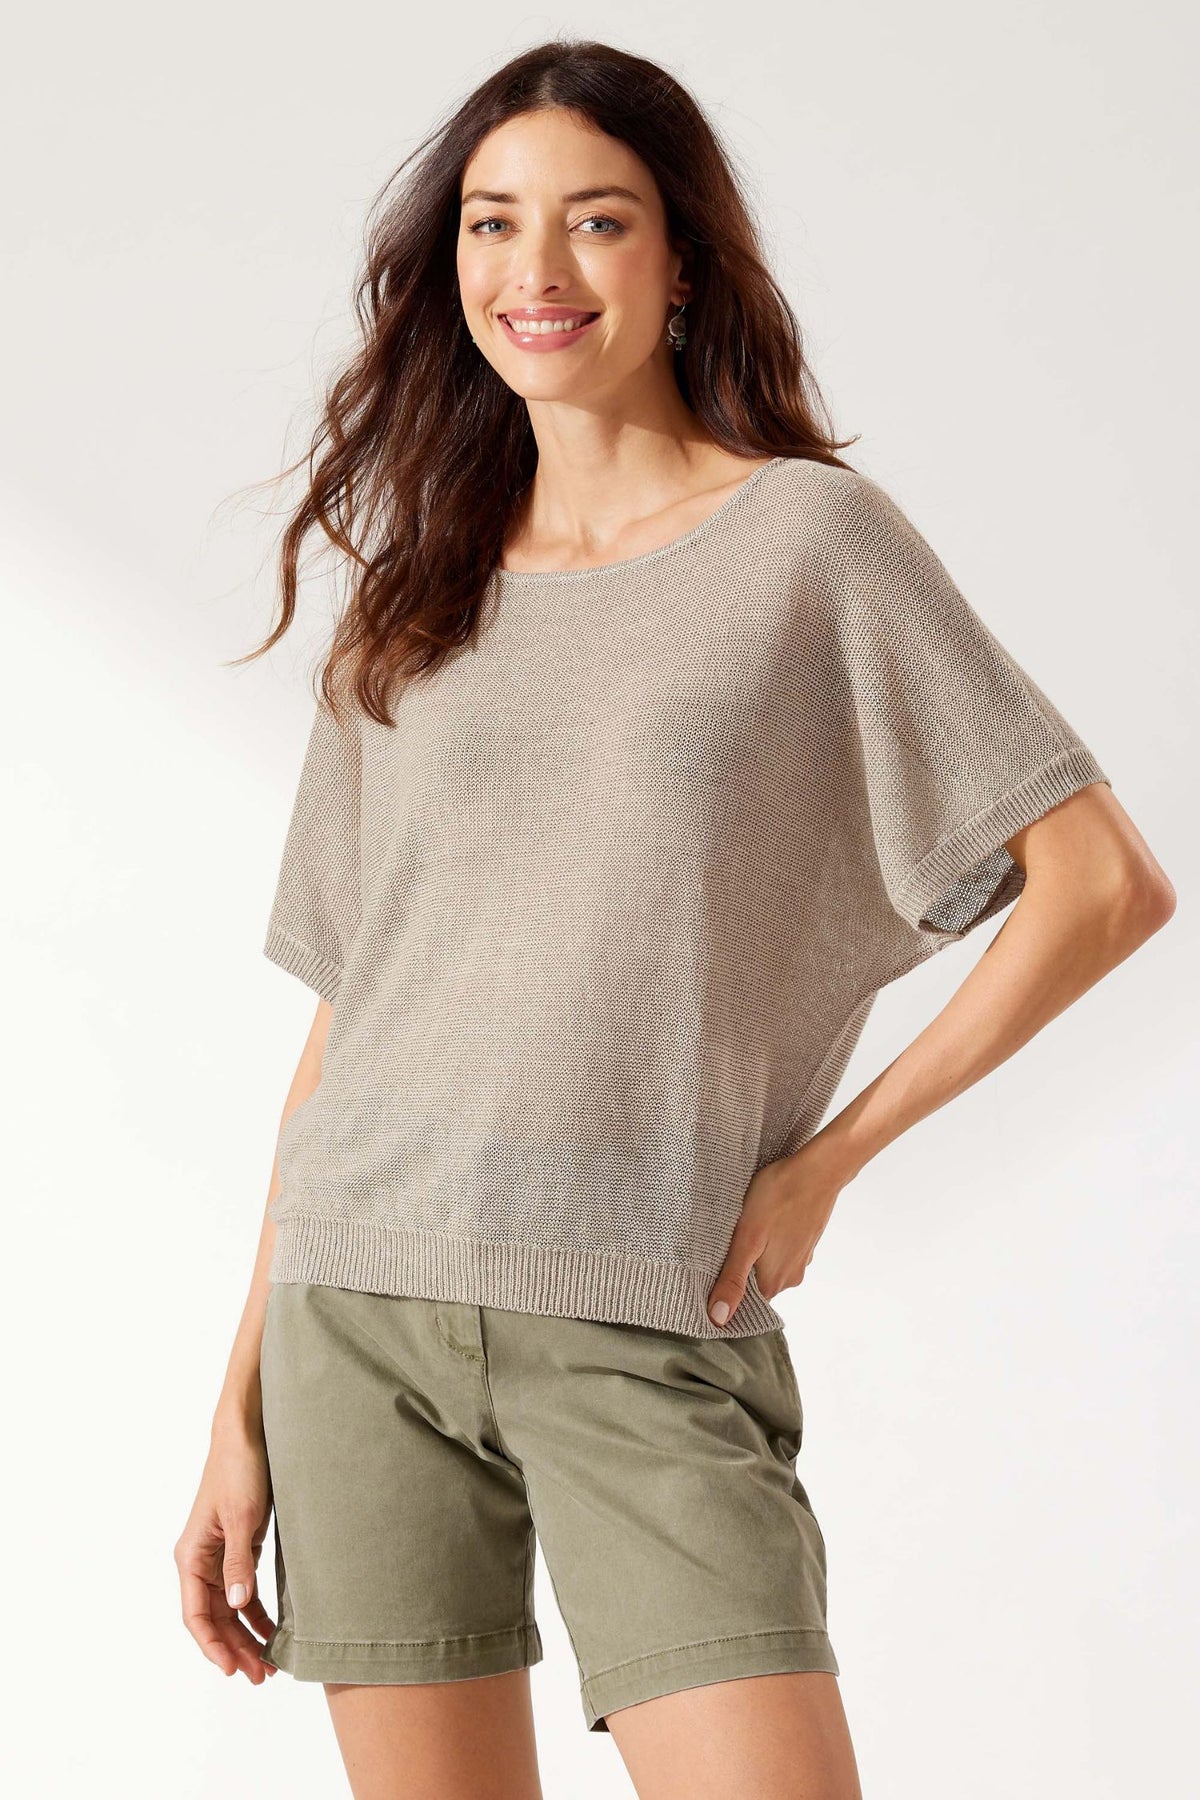 Tommy Bahama Cedar Linen Sweater - Style SW420920, front